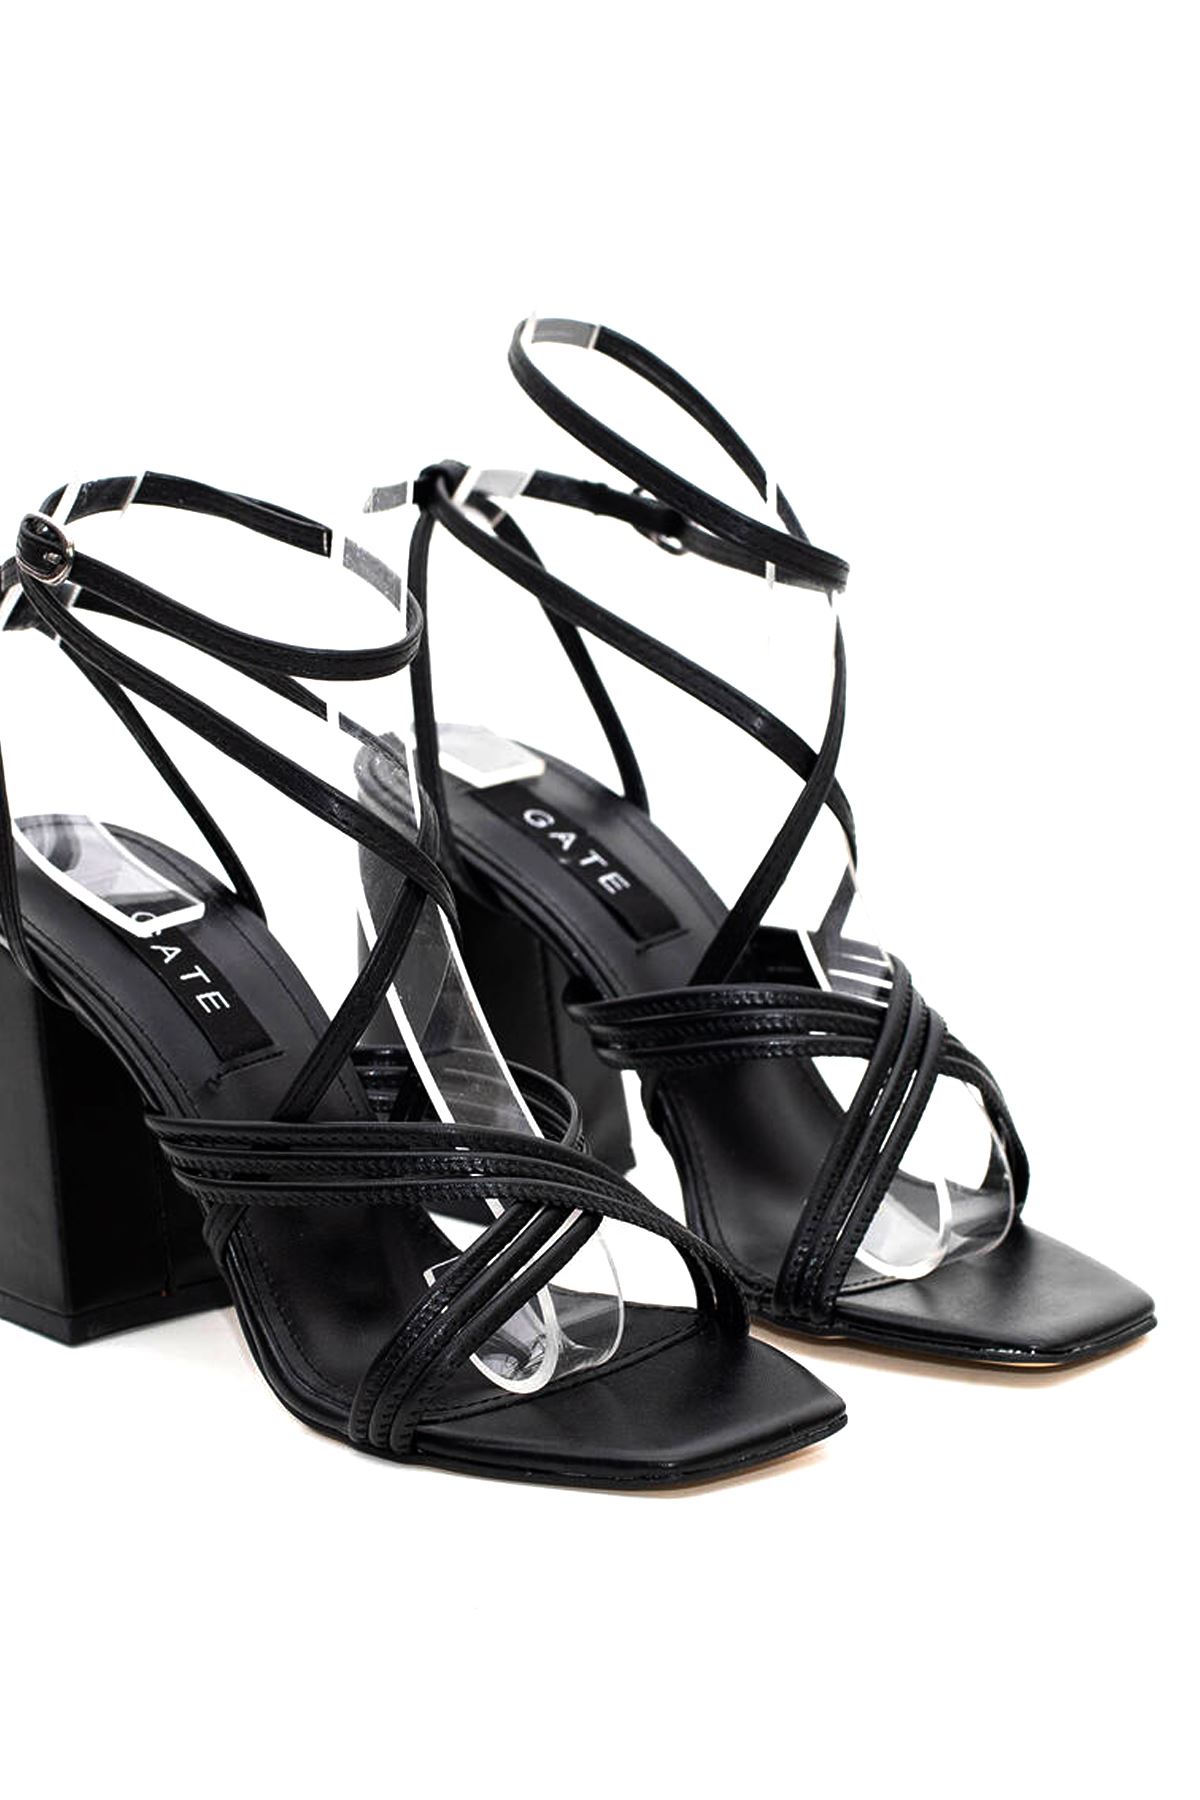 Kadın Bantlı İpli Topuklu Ayakkabı Sandalet Ava Gate Shoes-Siyah